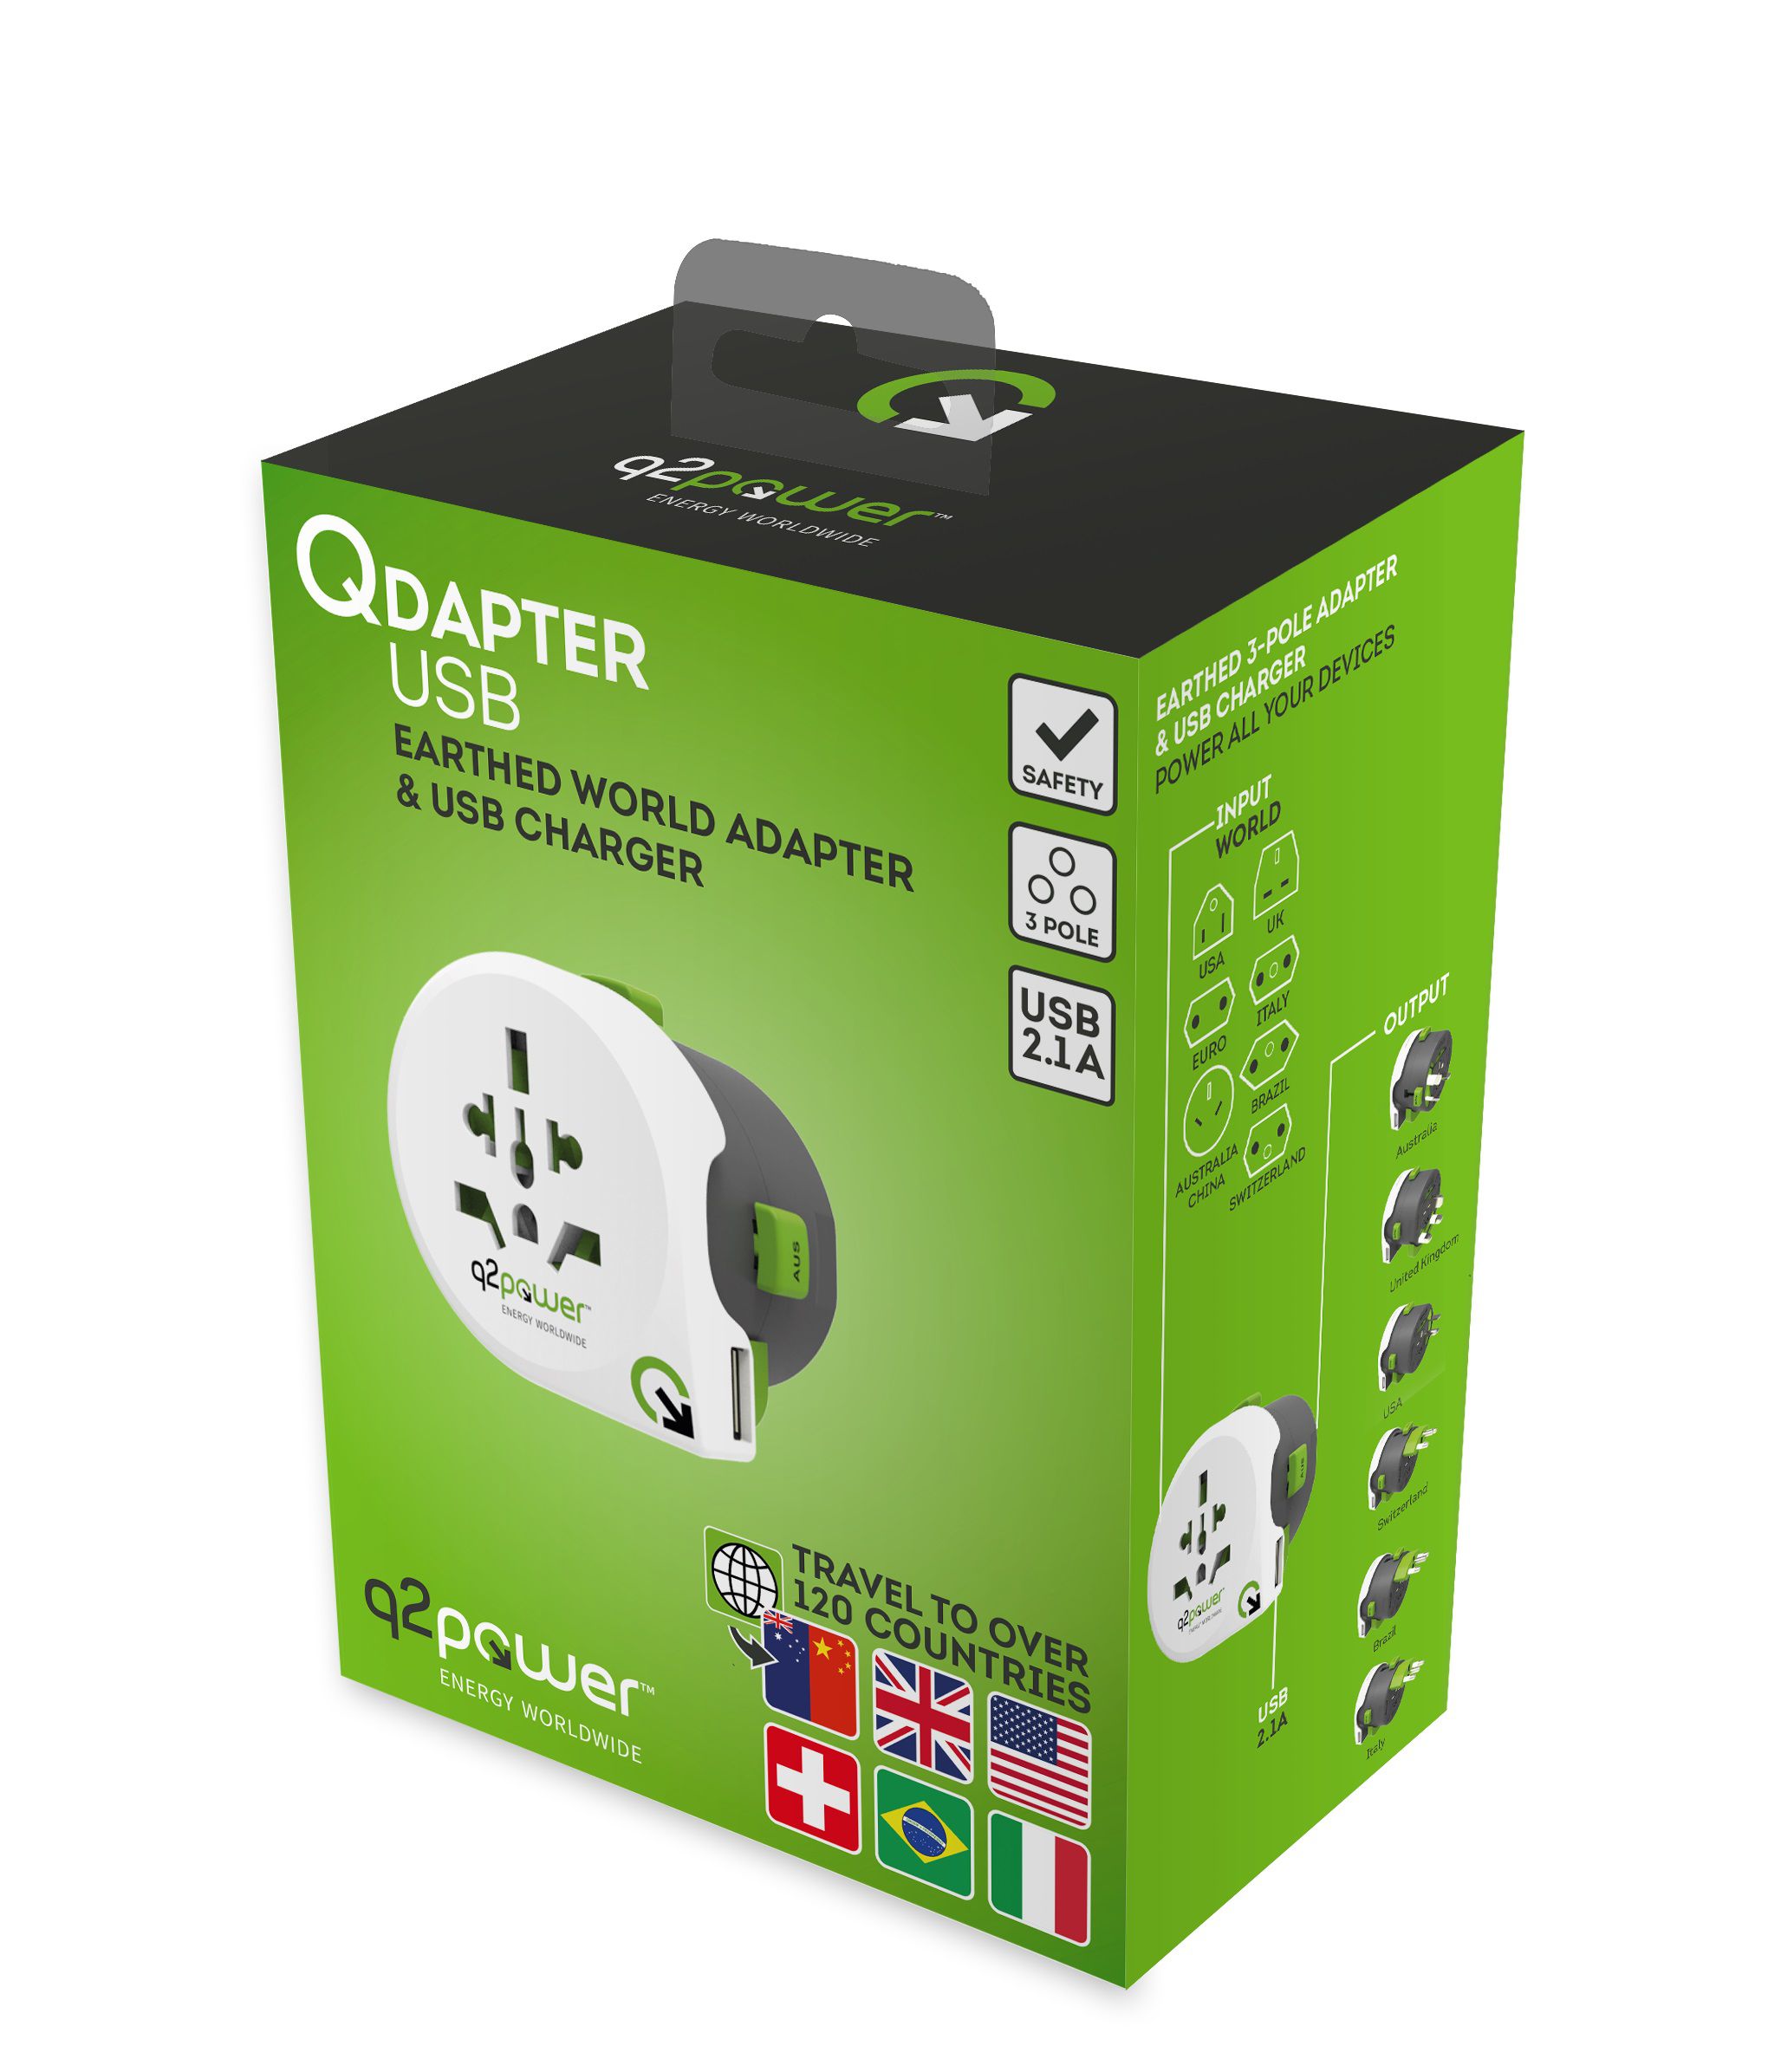 adattatori viaggio nel mondo "QDAPTER" con USB 2.1A